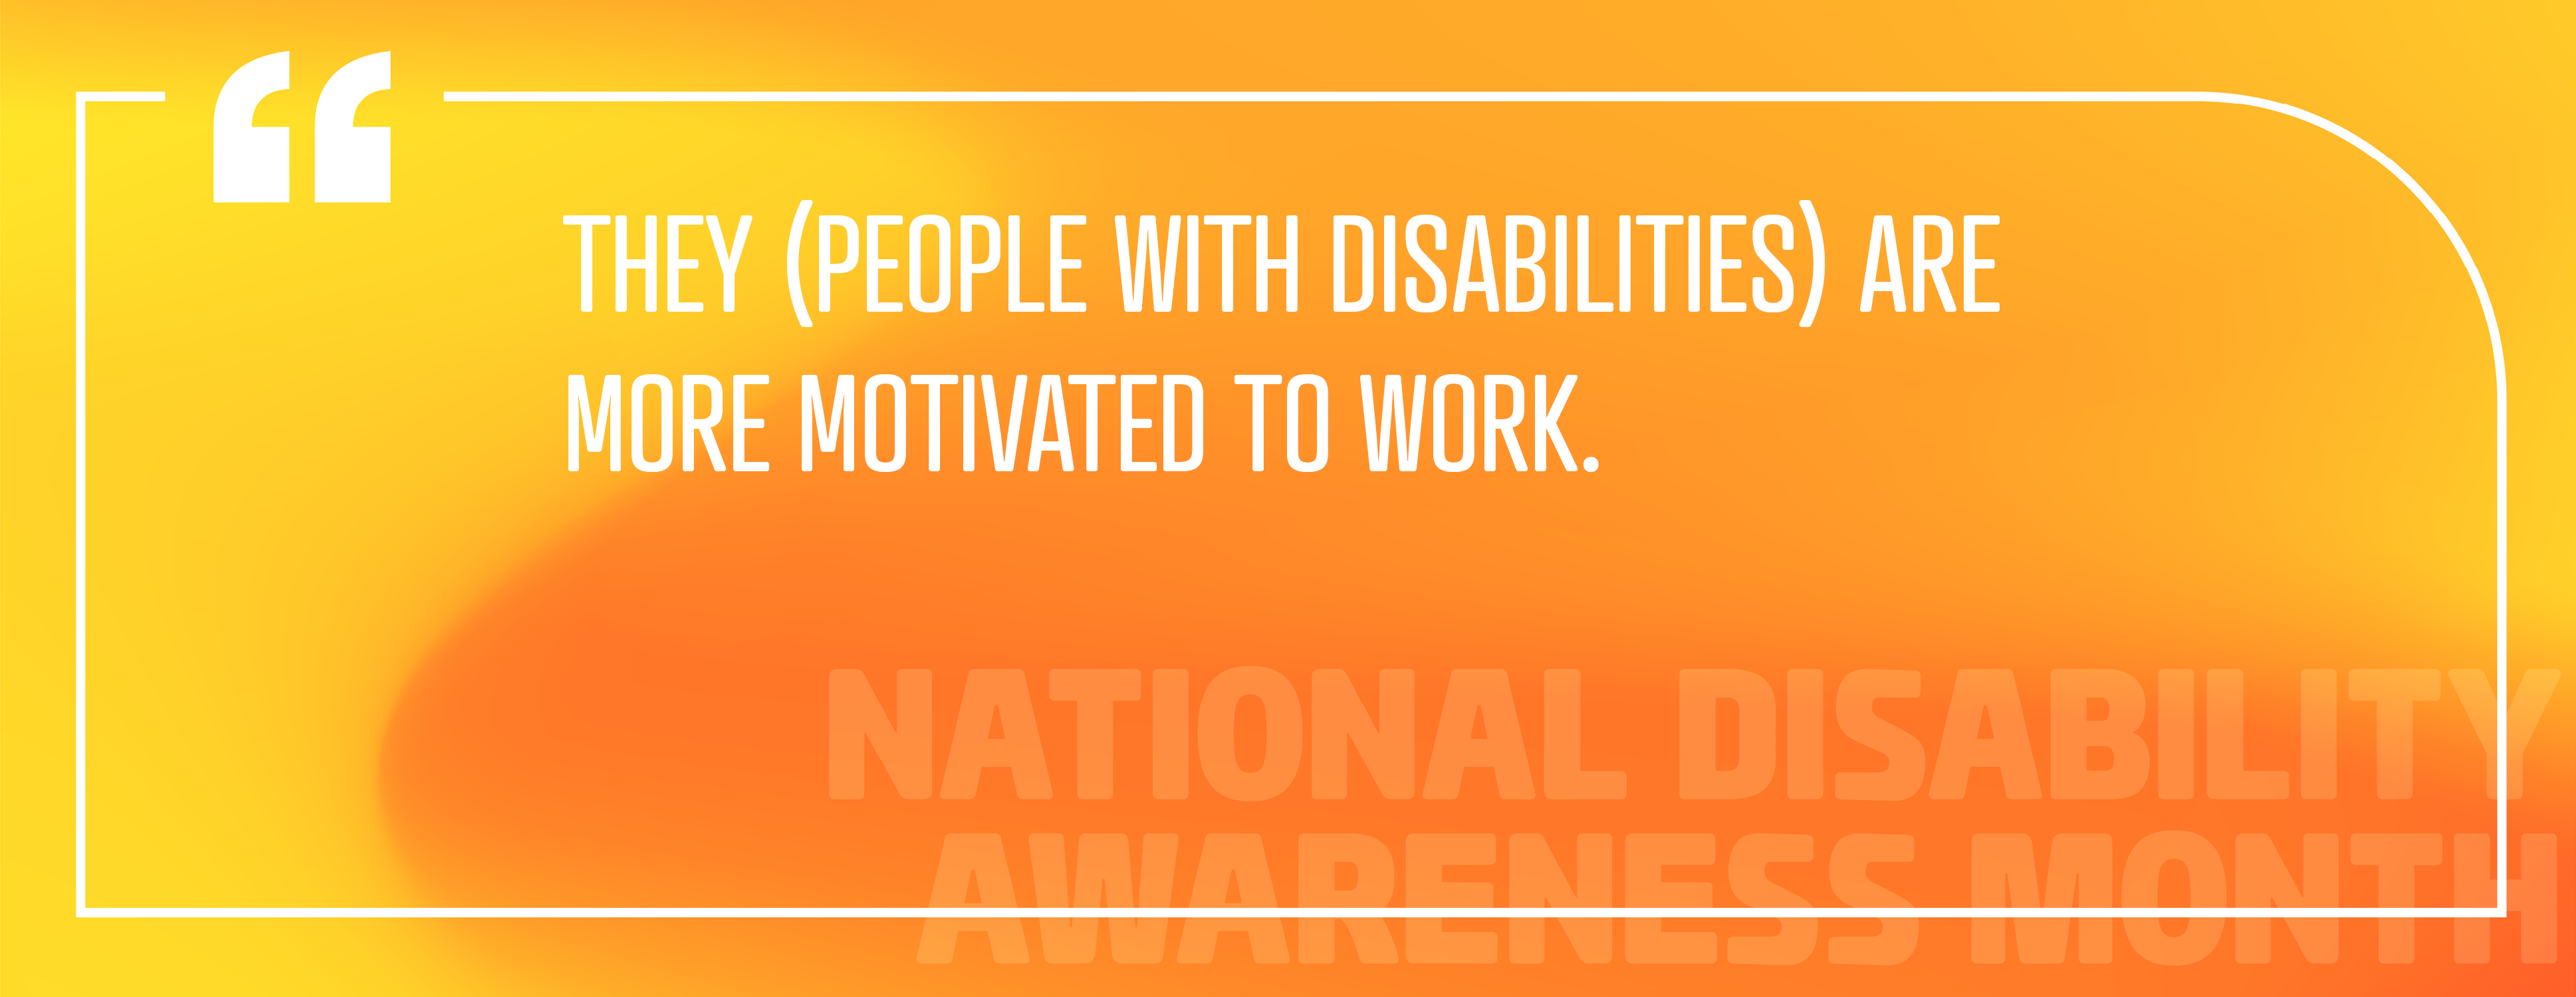 Image 5 : Emploi des personnes handicapées